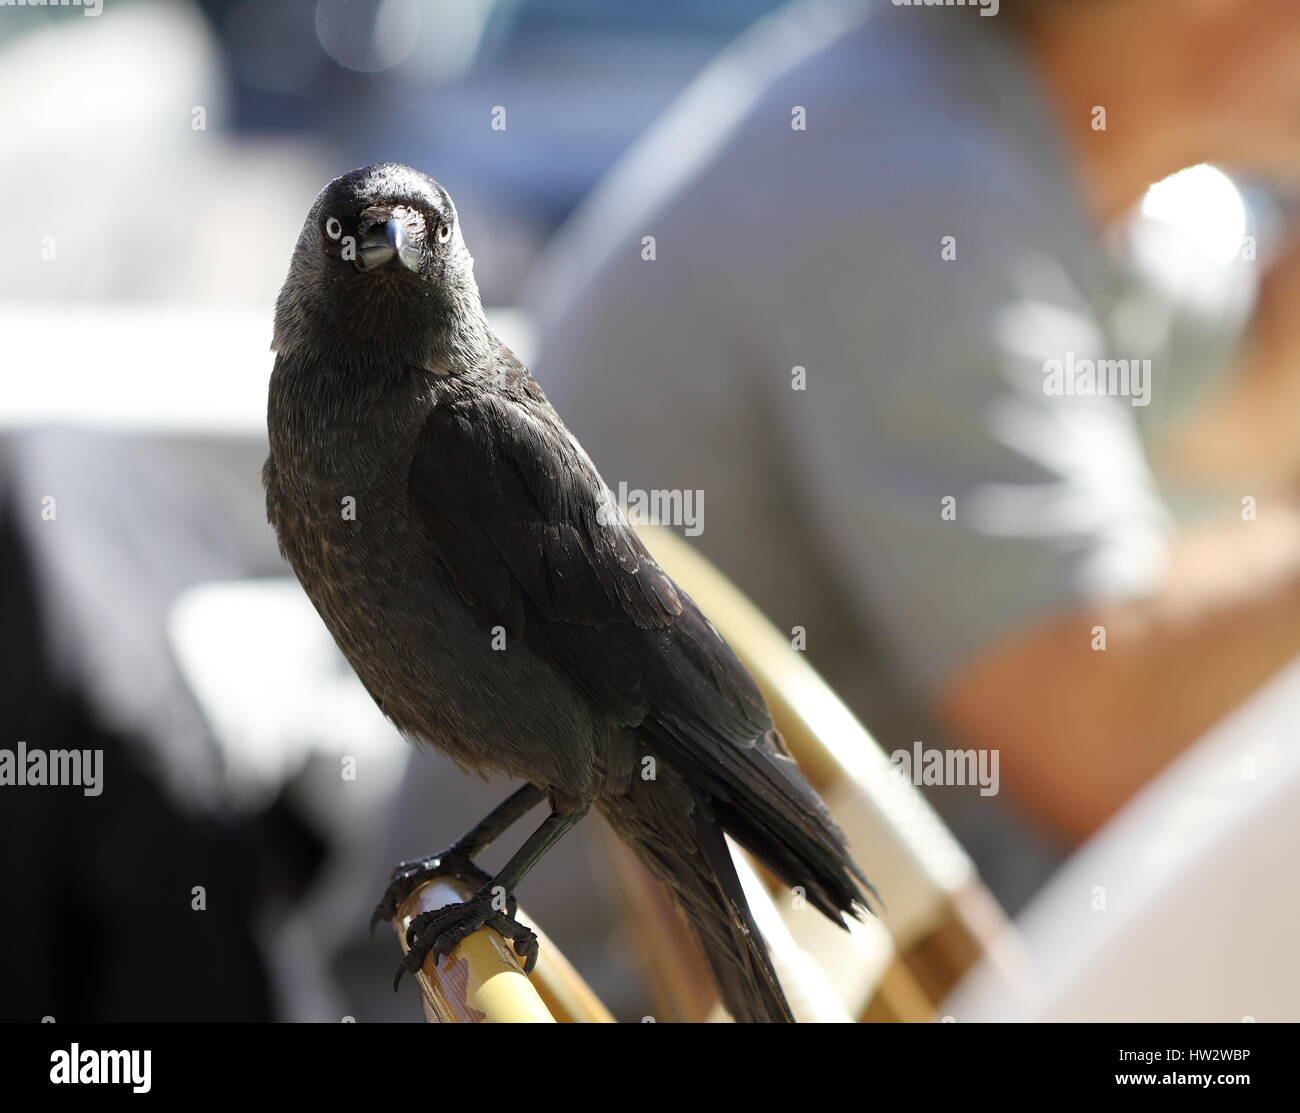 Ein dunkler Vogel auf einem Stuhl sitzend Stockfotografie - Alamy